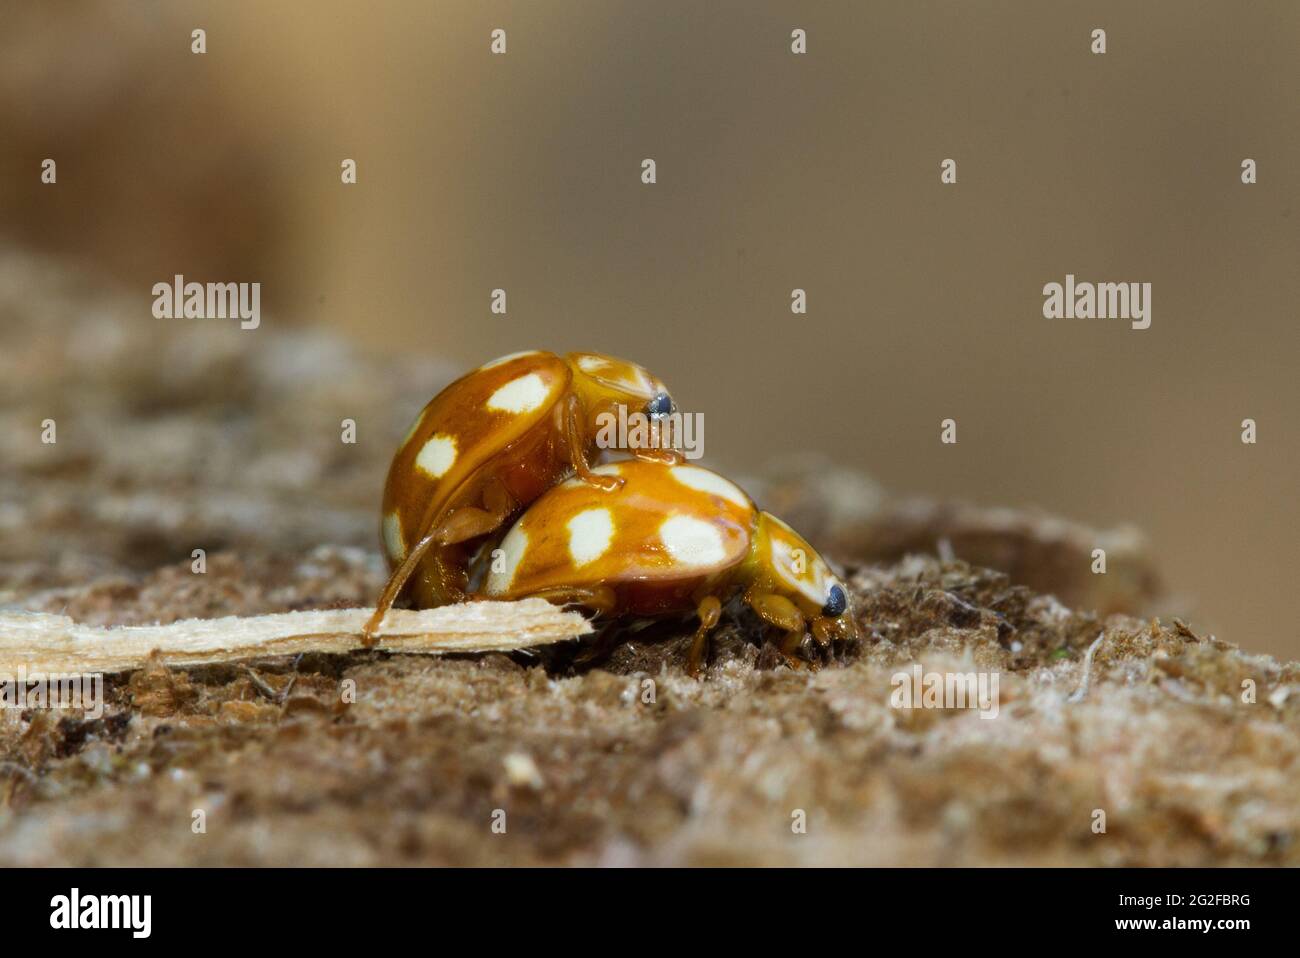 Apareamiento Ladybirds de diez puntos, escarabajos amarillo-marrón manchados Foto de stock